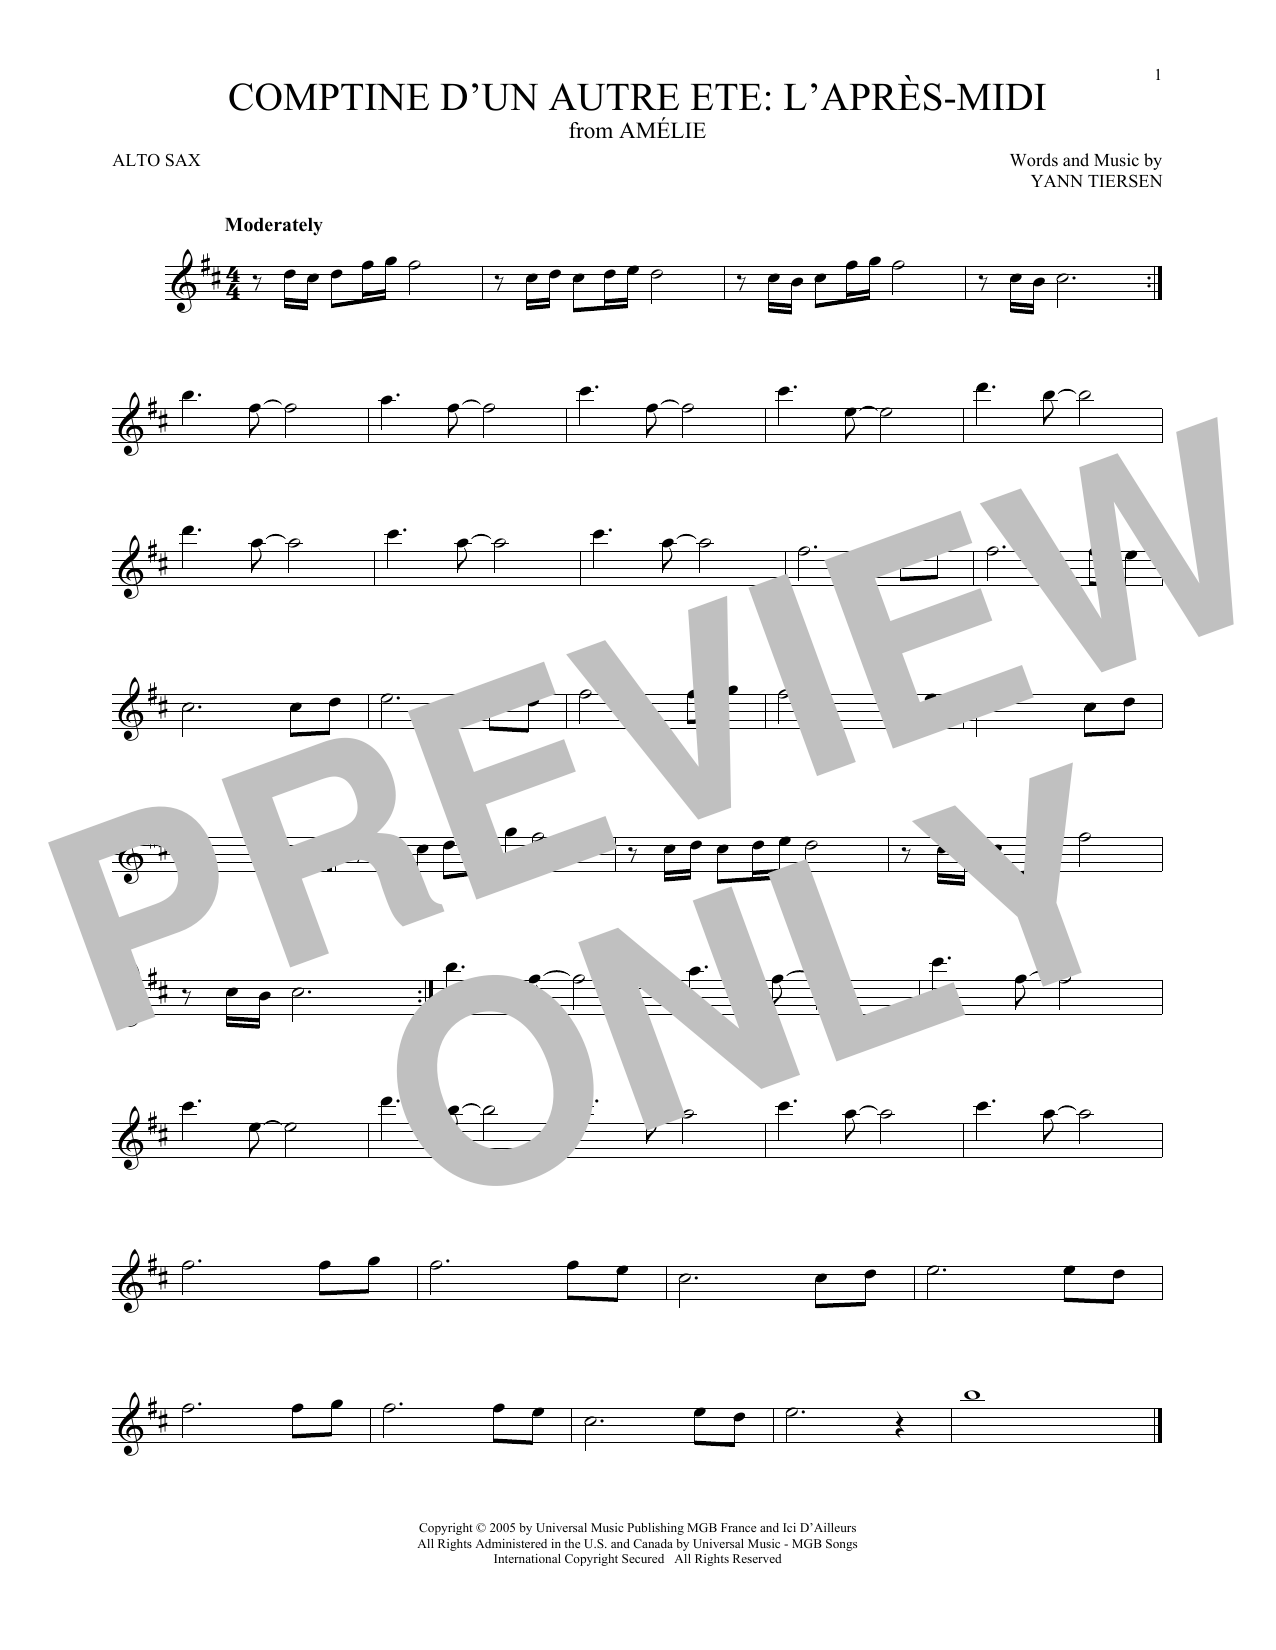 Yann Tiersen Comptine d'un autre été: L'après-midi (from Amelie) Sheet Music Notes & Chords for Alto Sax Solo - Download or Print PDF